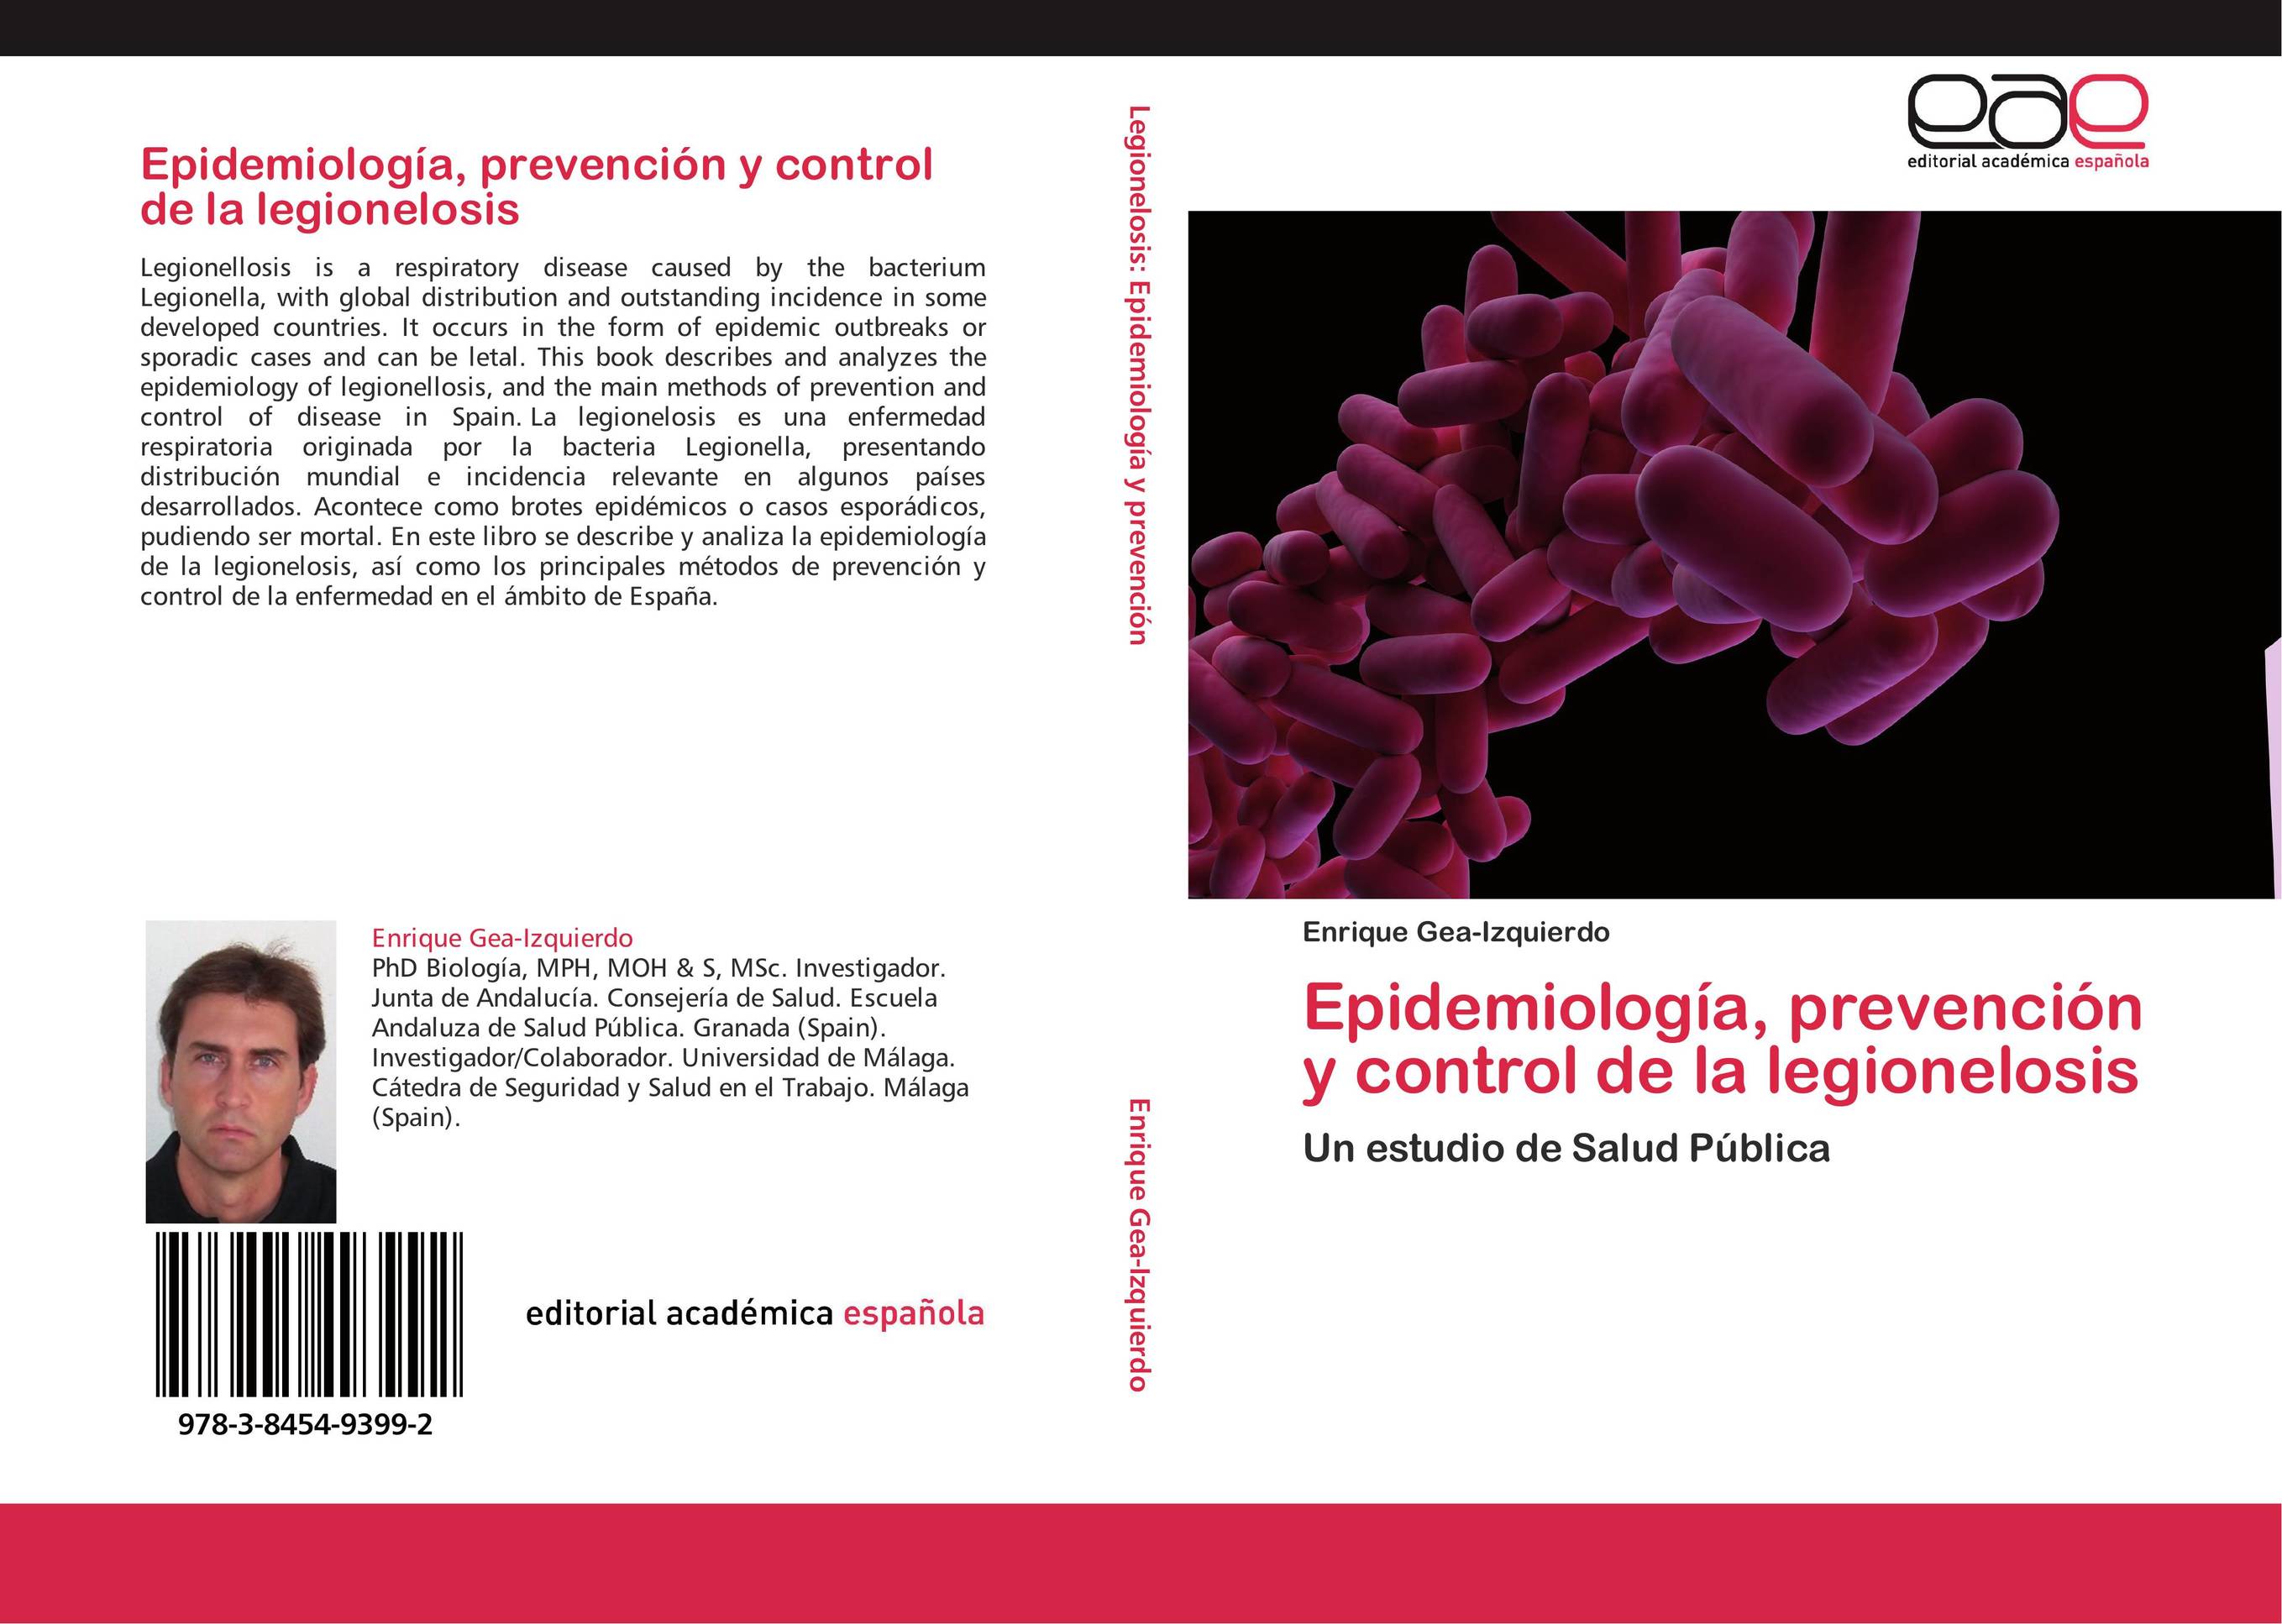 Epidemiología, prevención y control de la legionelosis